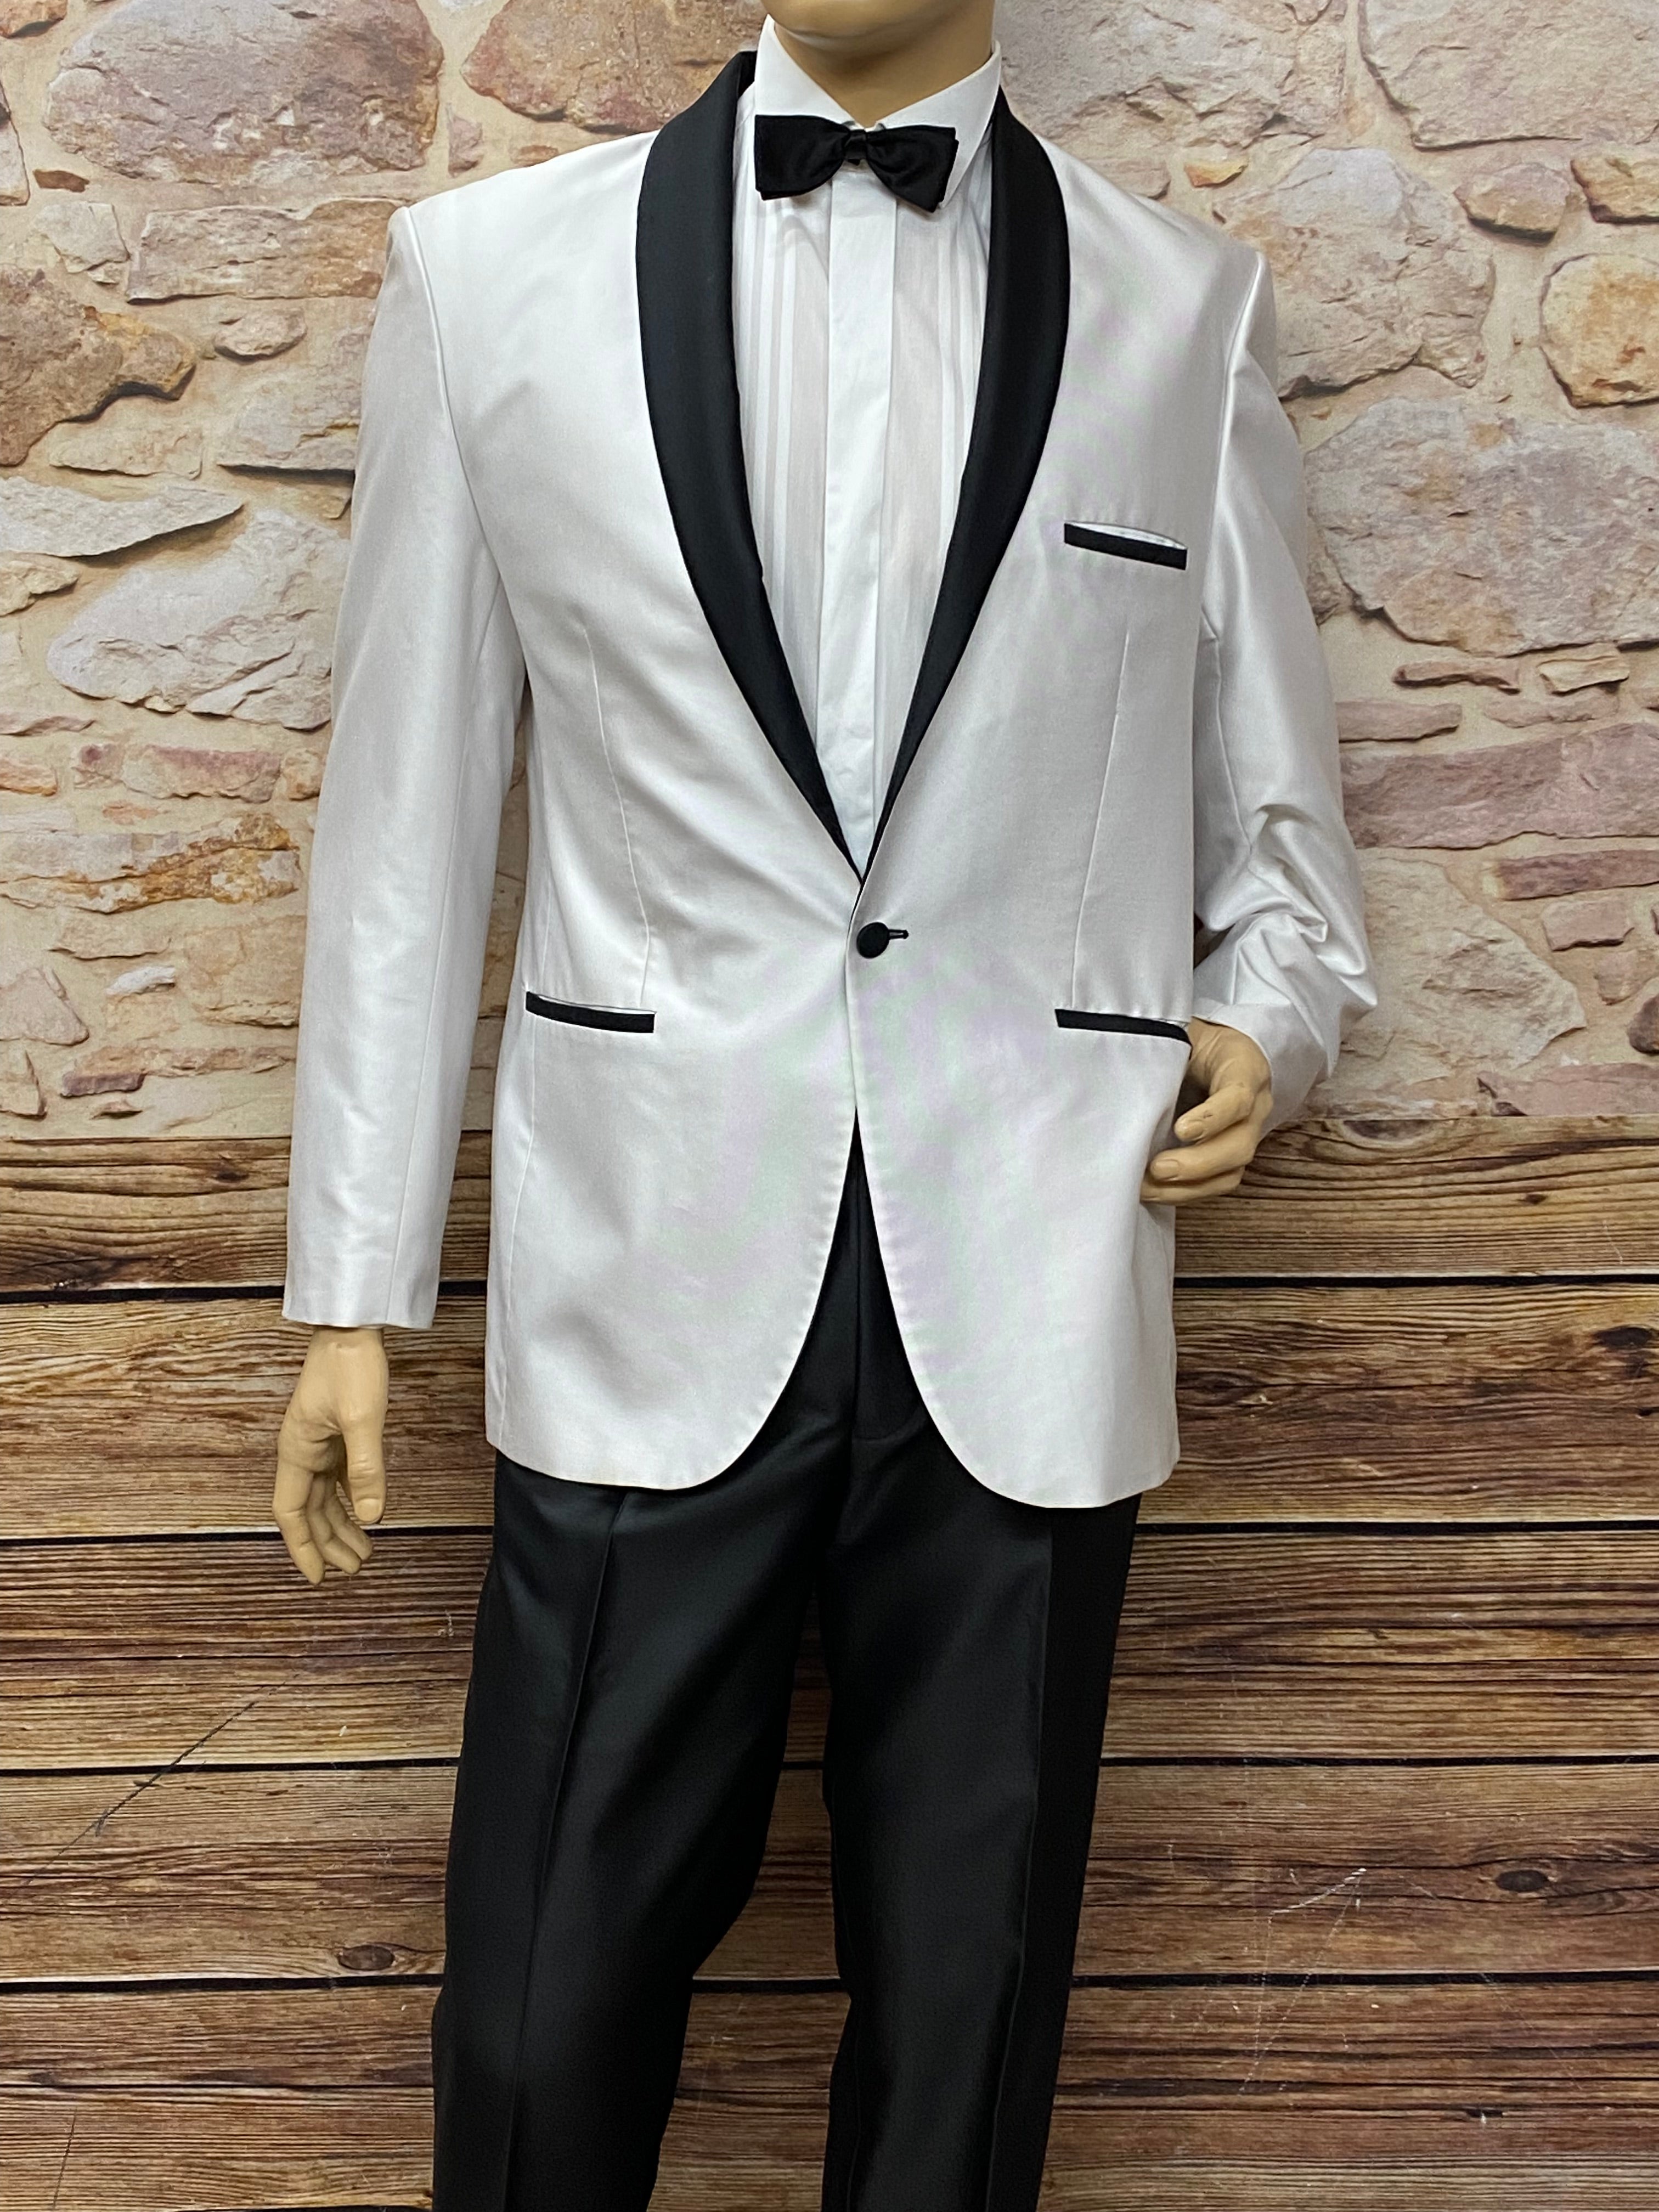 Schwarz weißer Anzug 5teilig, Gr.50, Mottoparty Black and White – Glad Rags  Kostümverkauf